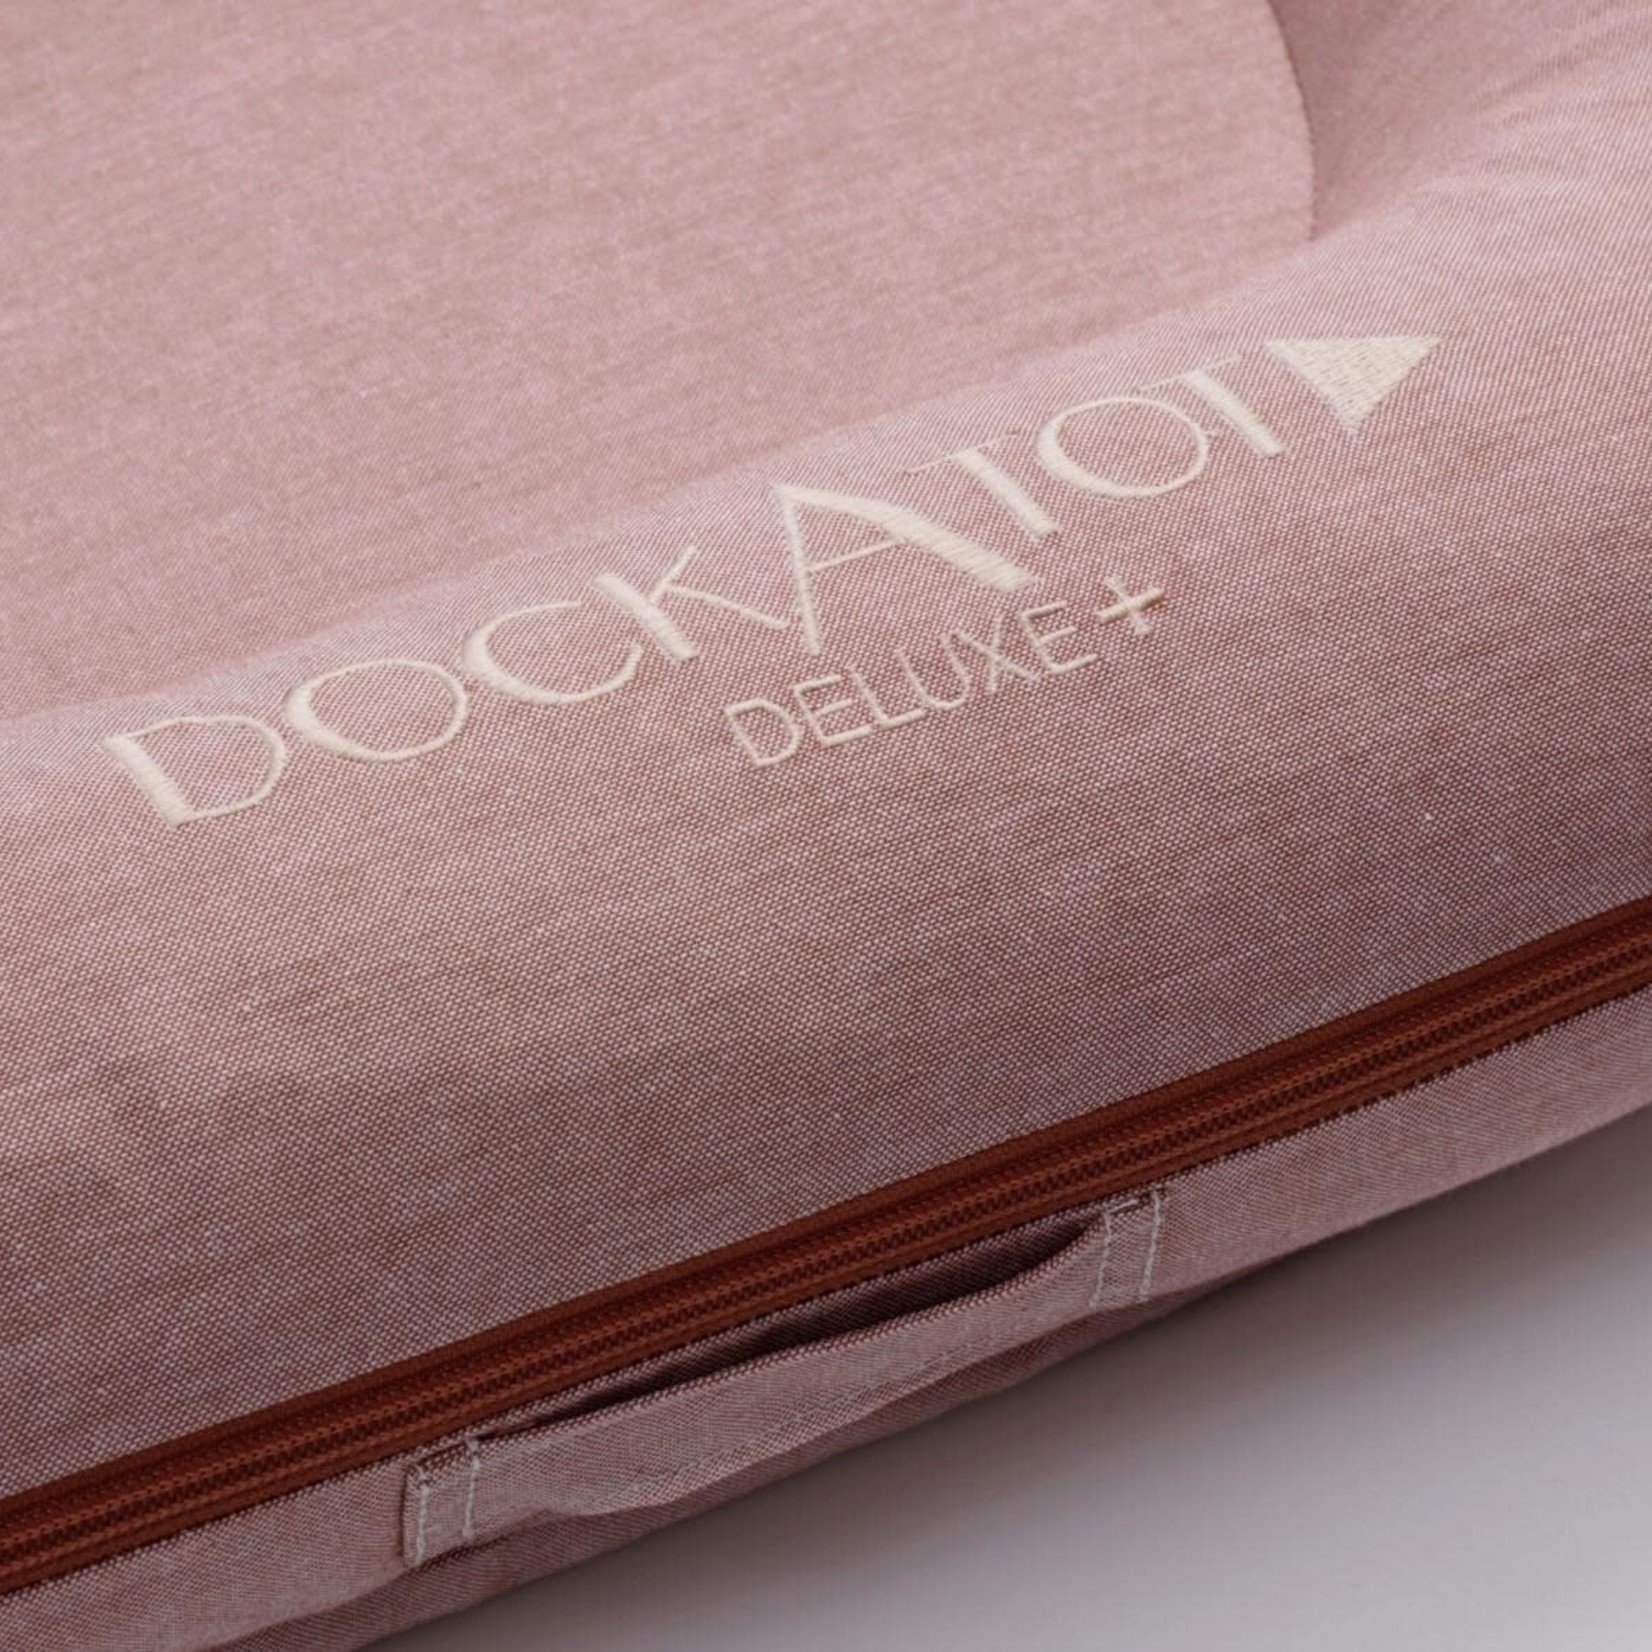 DockATot (Sleepyhead) DockATot - Deluxe+ Dock Ginger Chambray